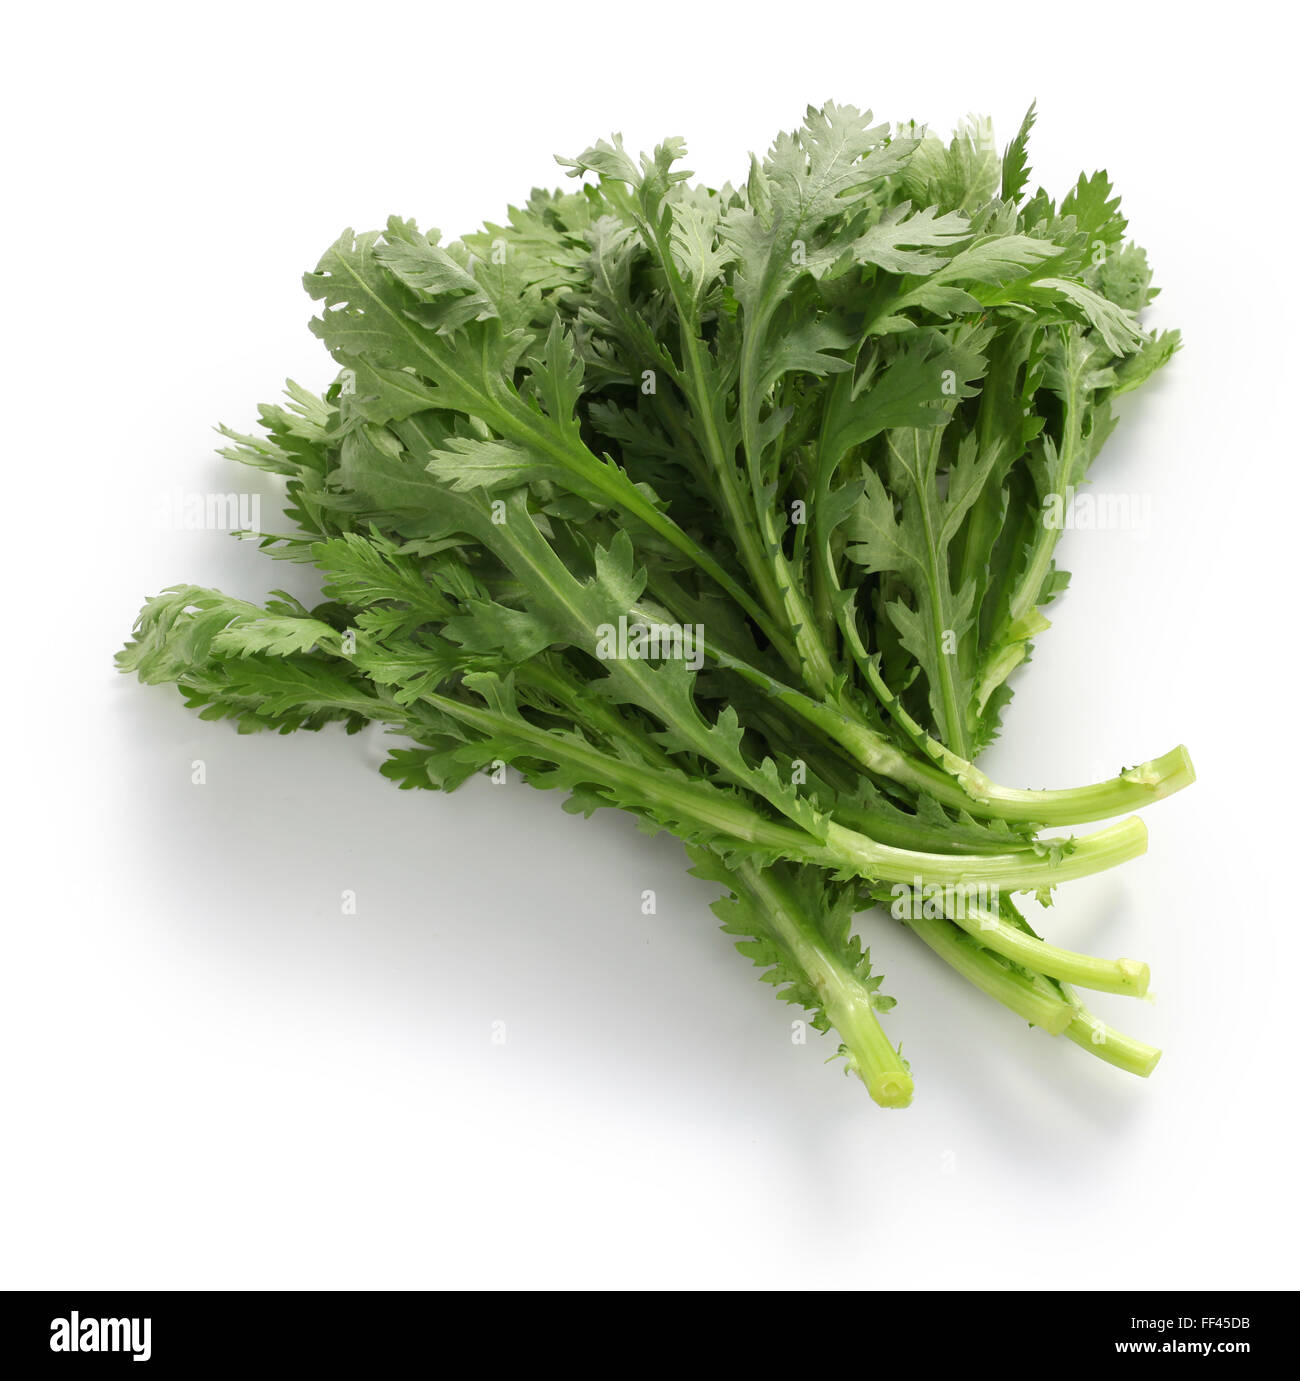 Krone, Daisy, Chop Suey grün, Shungiku, Chrysantheme Grüns isoliert auf weißem Hintergrund Stockfoto